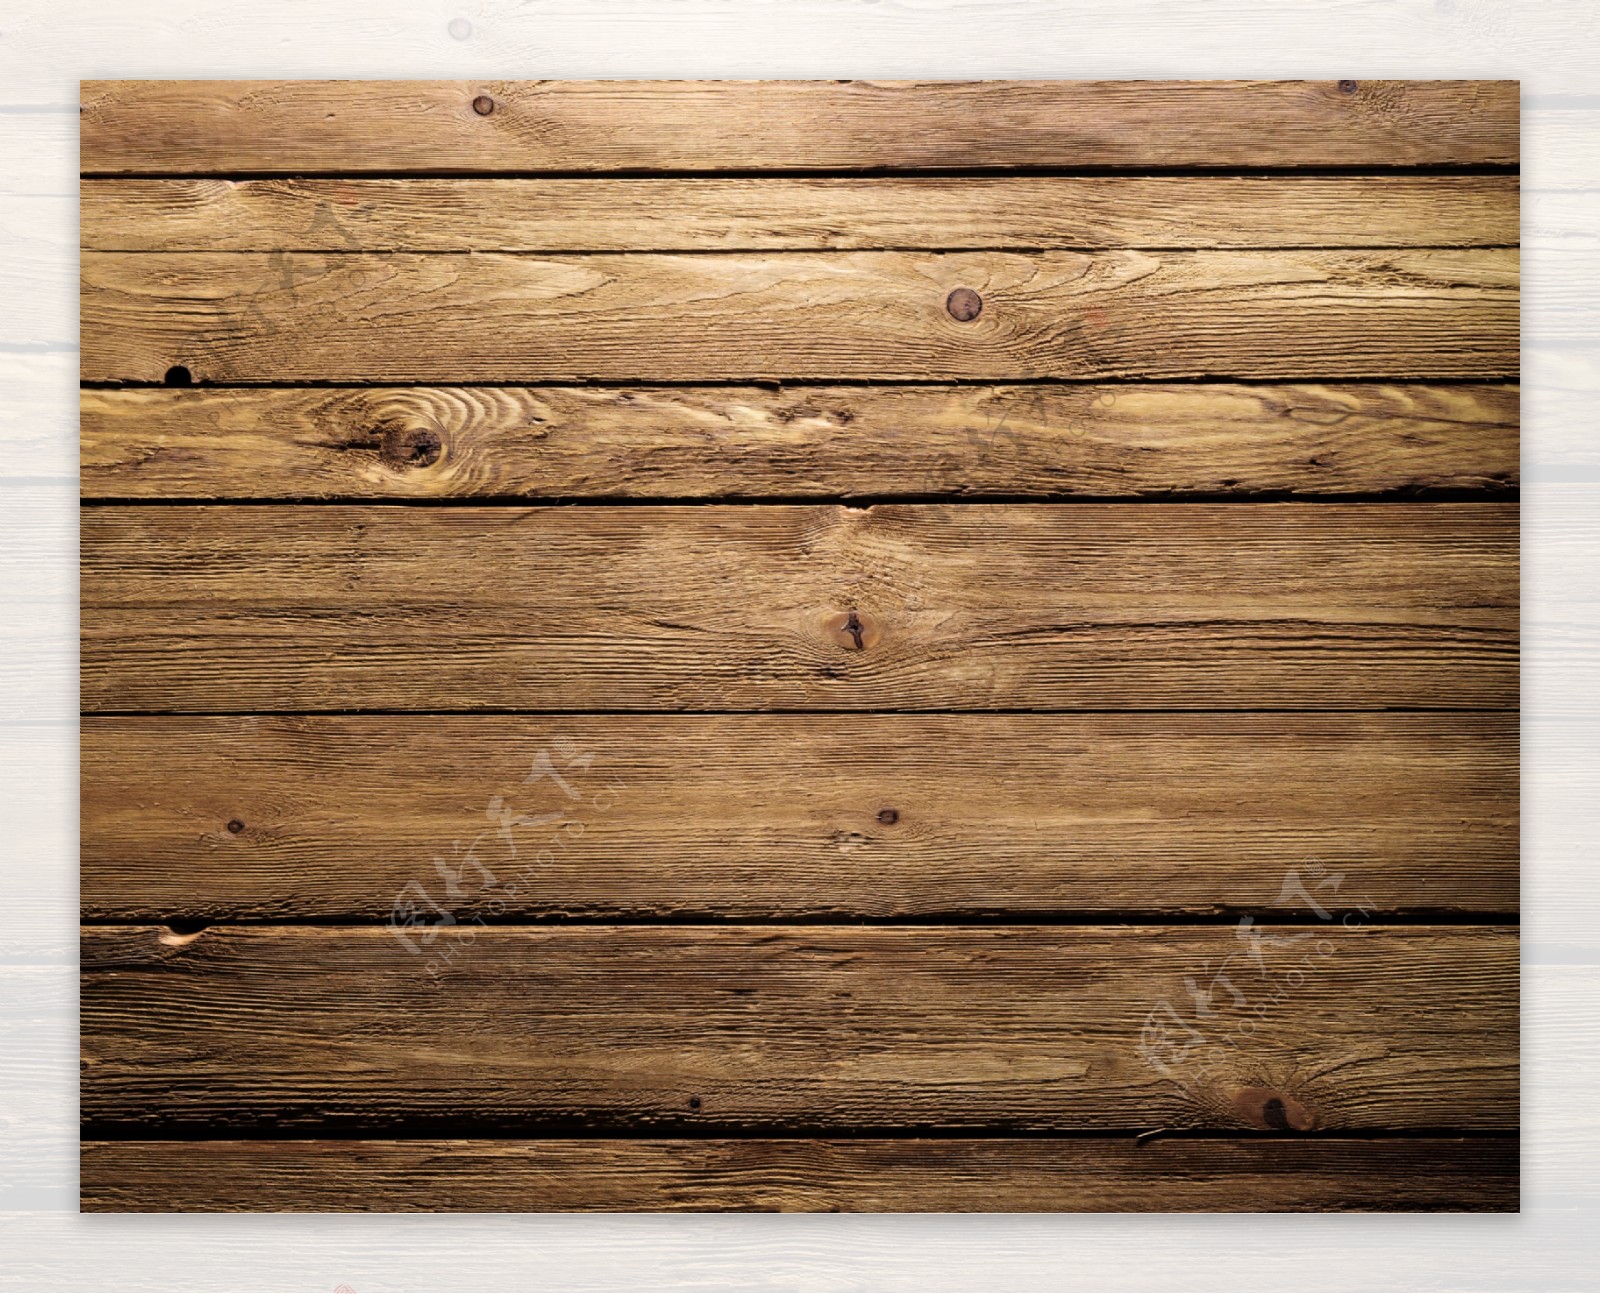 复古木板背景图片